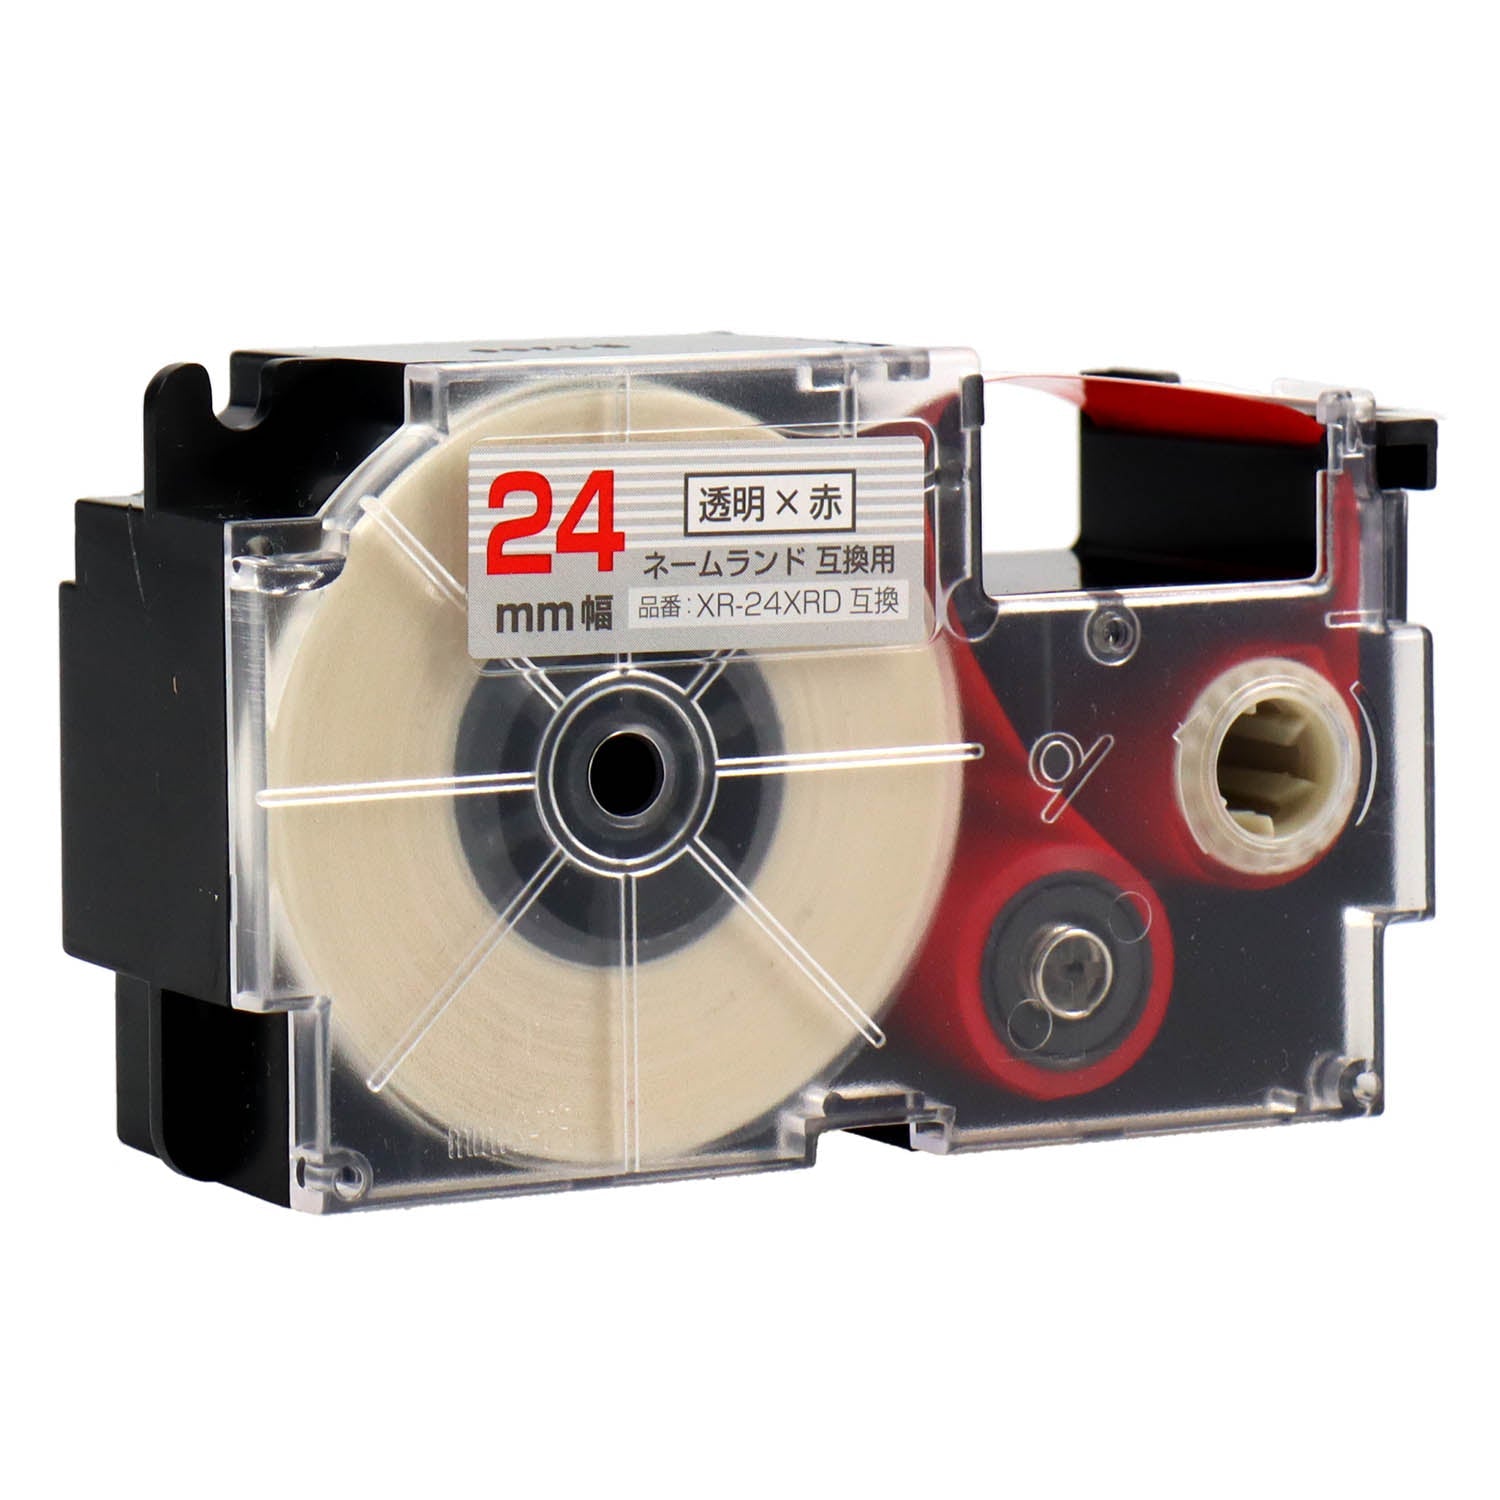 ネームランド用互換テープカートリッジ 透明×赤文字 24mm